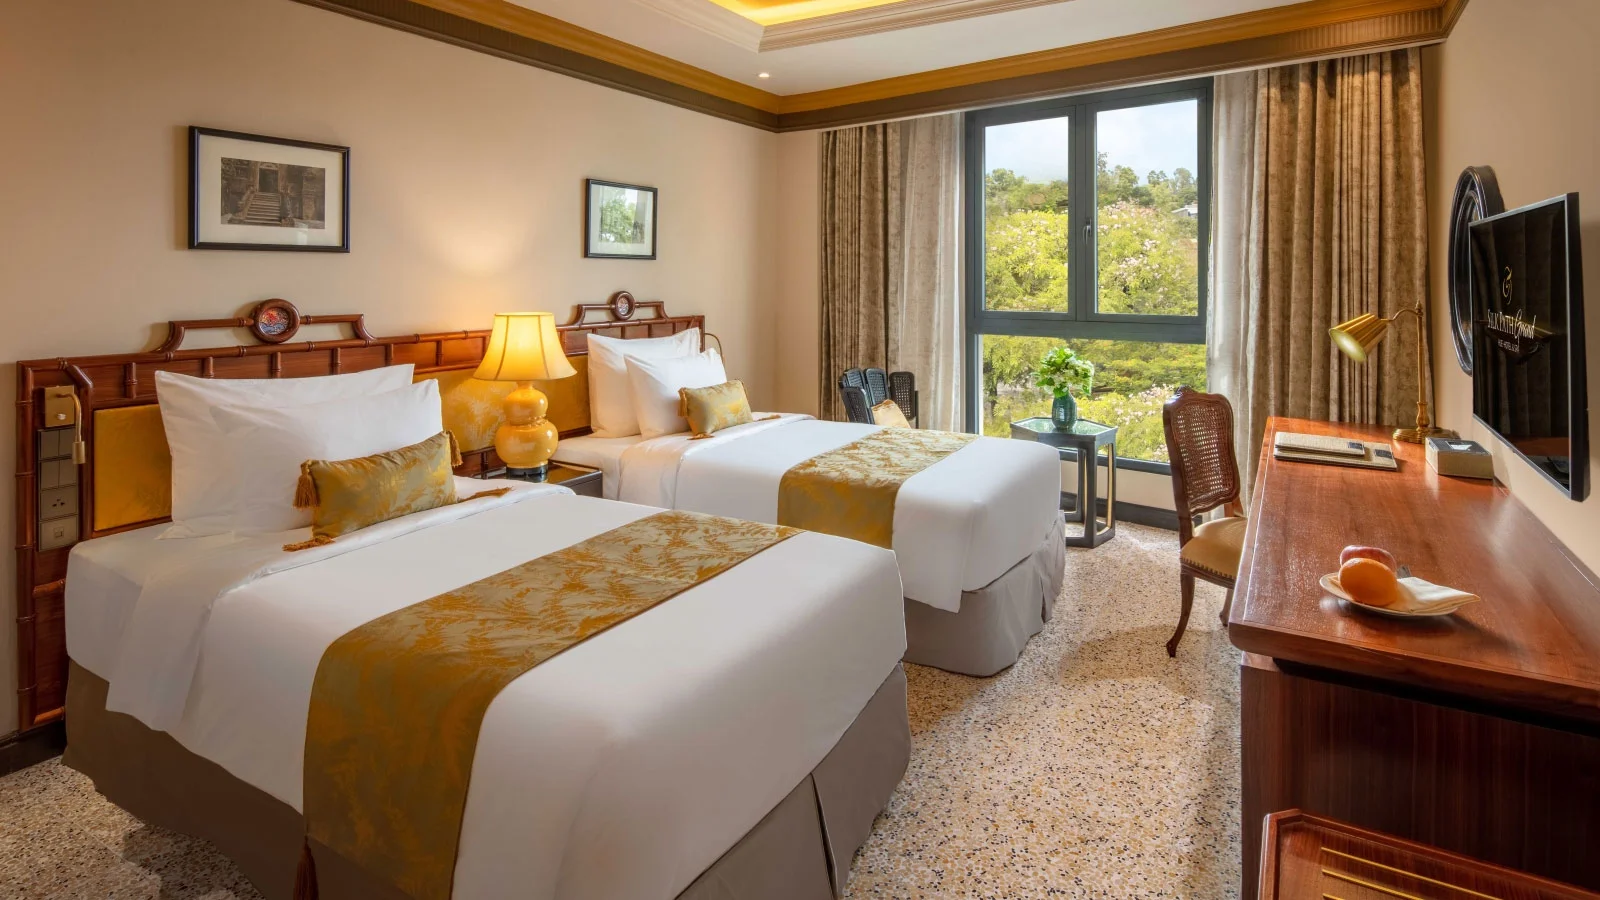 Combo khách sạn 5 sao Silk Path Grand Hotel Huế 3 ngày 2 đêm cùng vé máy bay từ Hà Nội